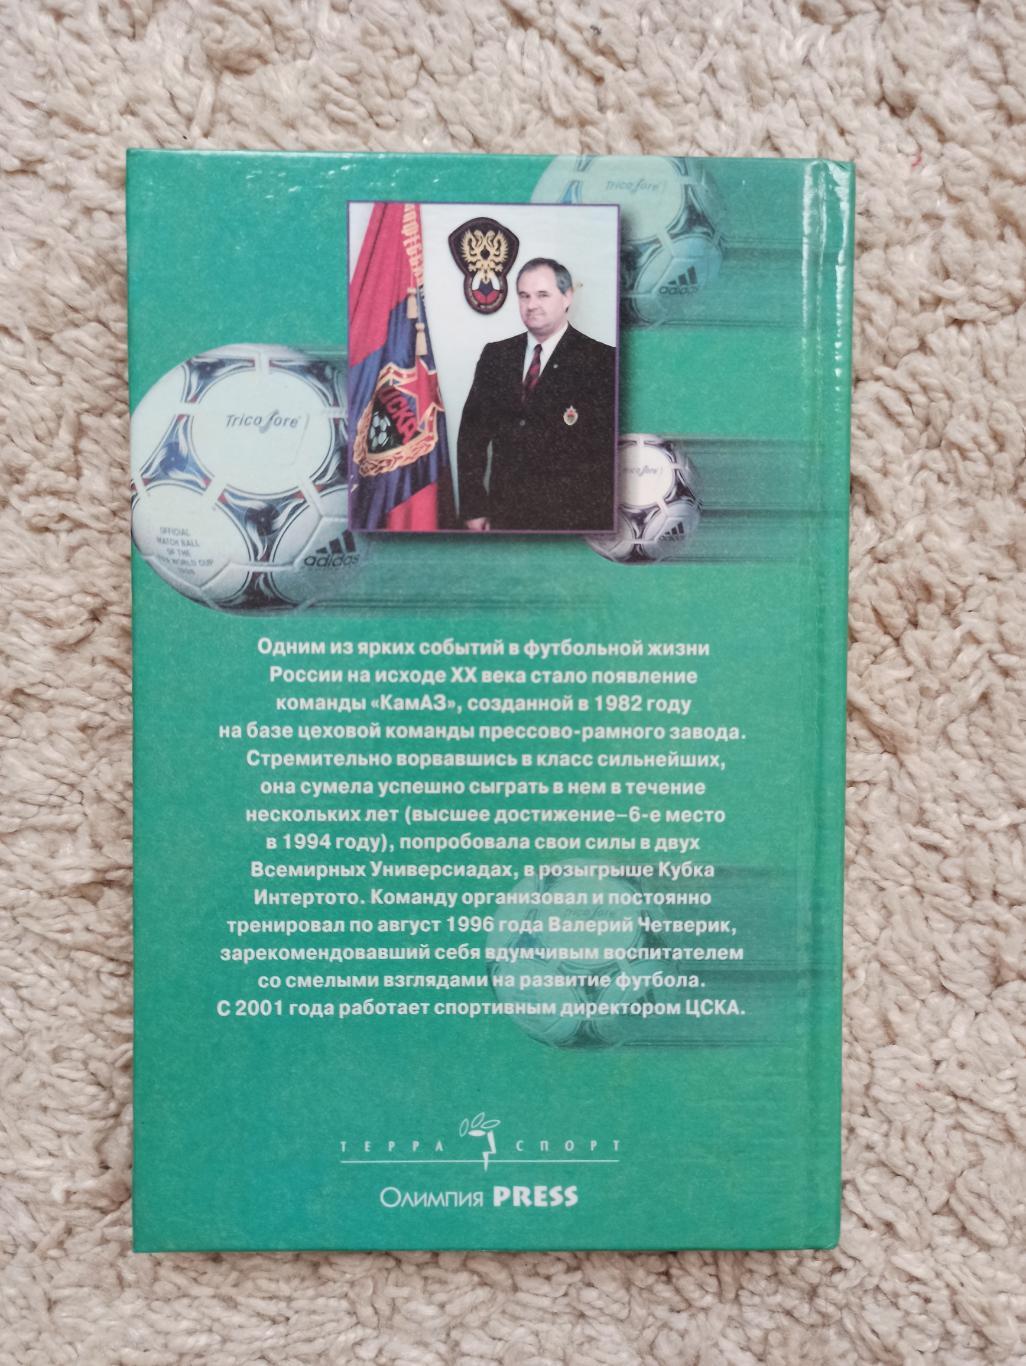 Футбол, Валерий Четверик, Безумная жизнь в безумном футболе, редкая книга 6